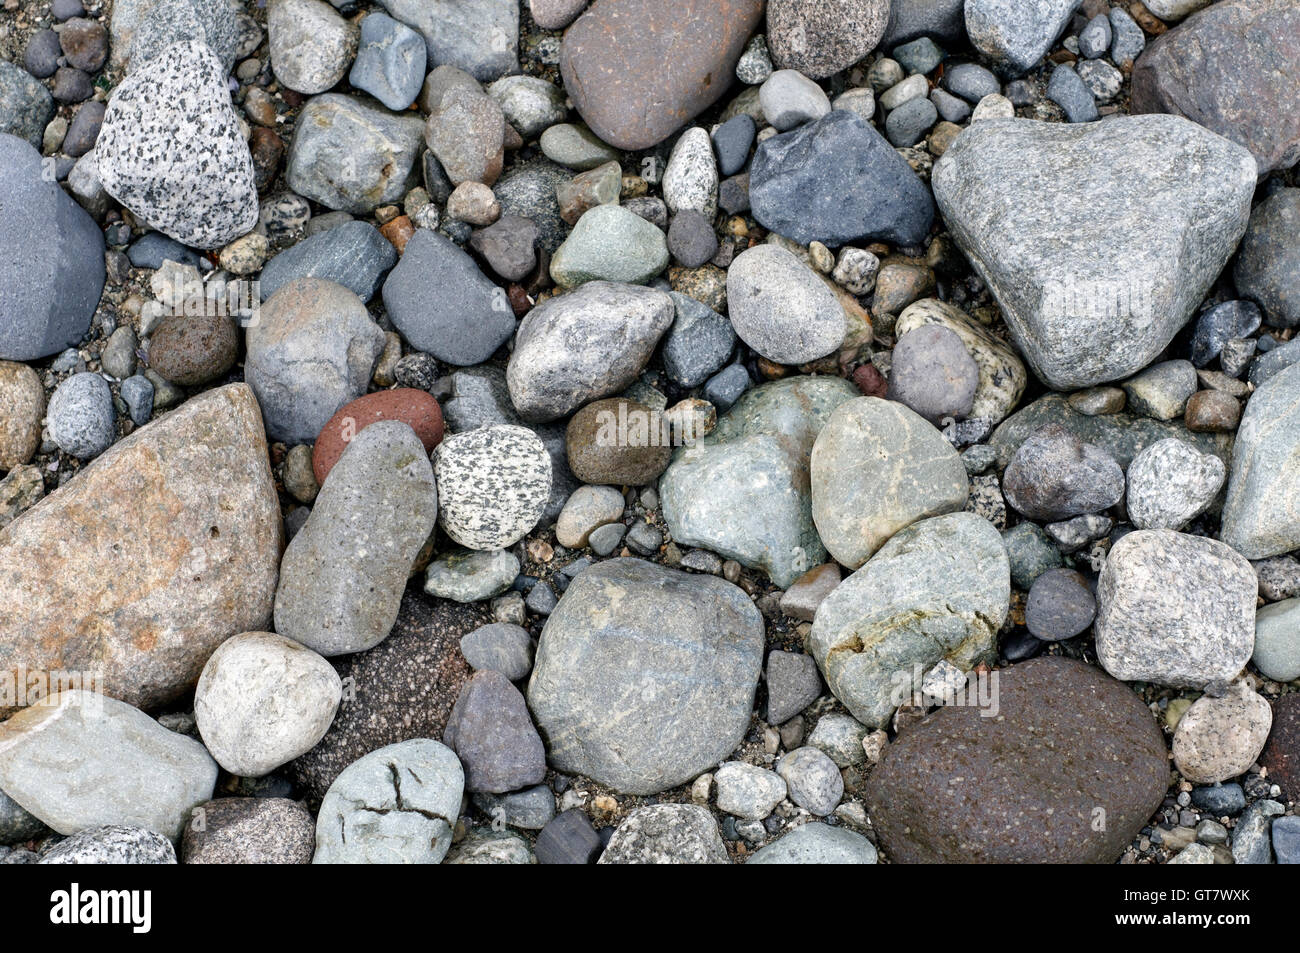 Les roches altérées de différentes tailles sur une plage rocheuse, Vancouver, British Columbia, Canada Banque D'Images